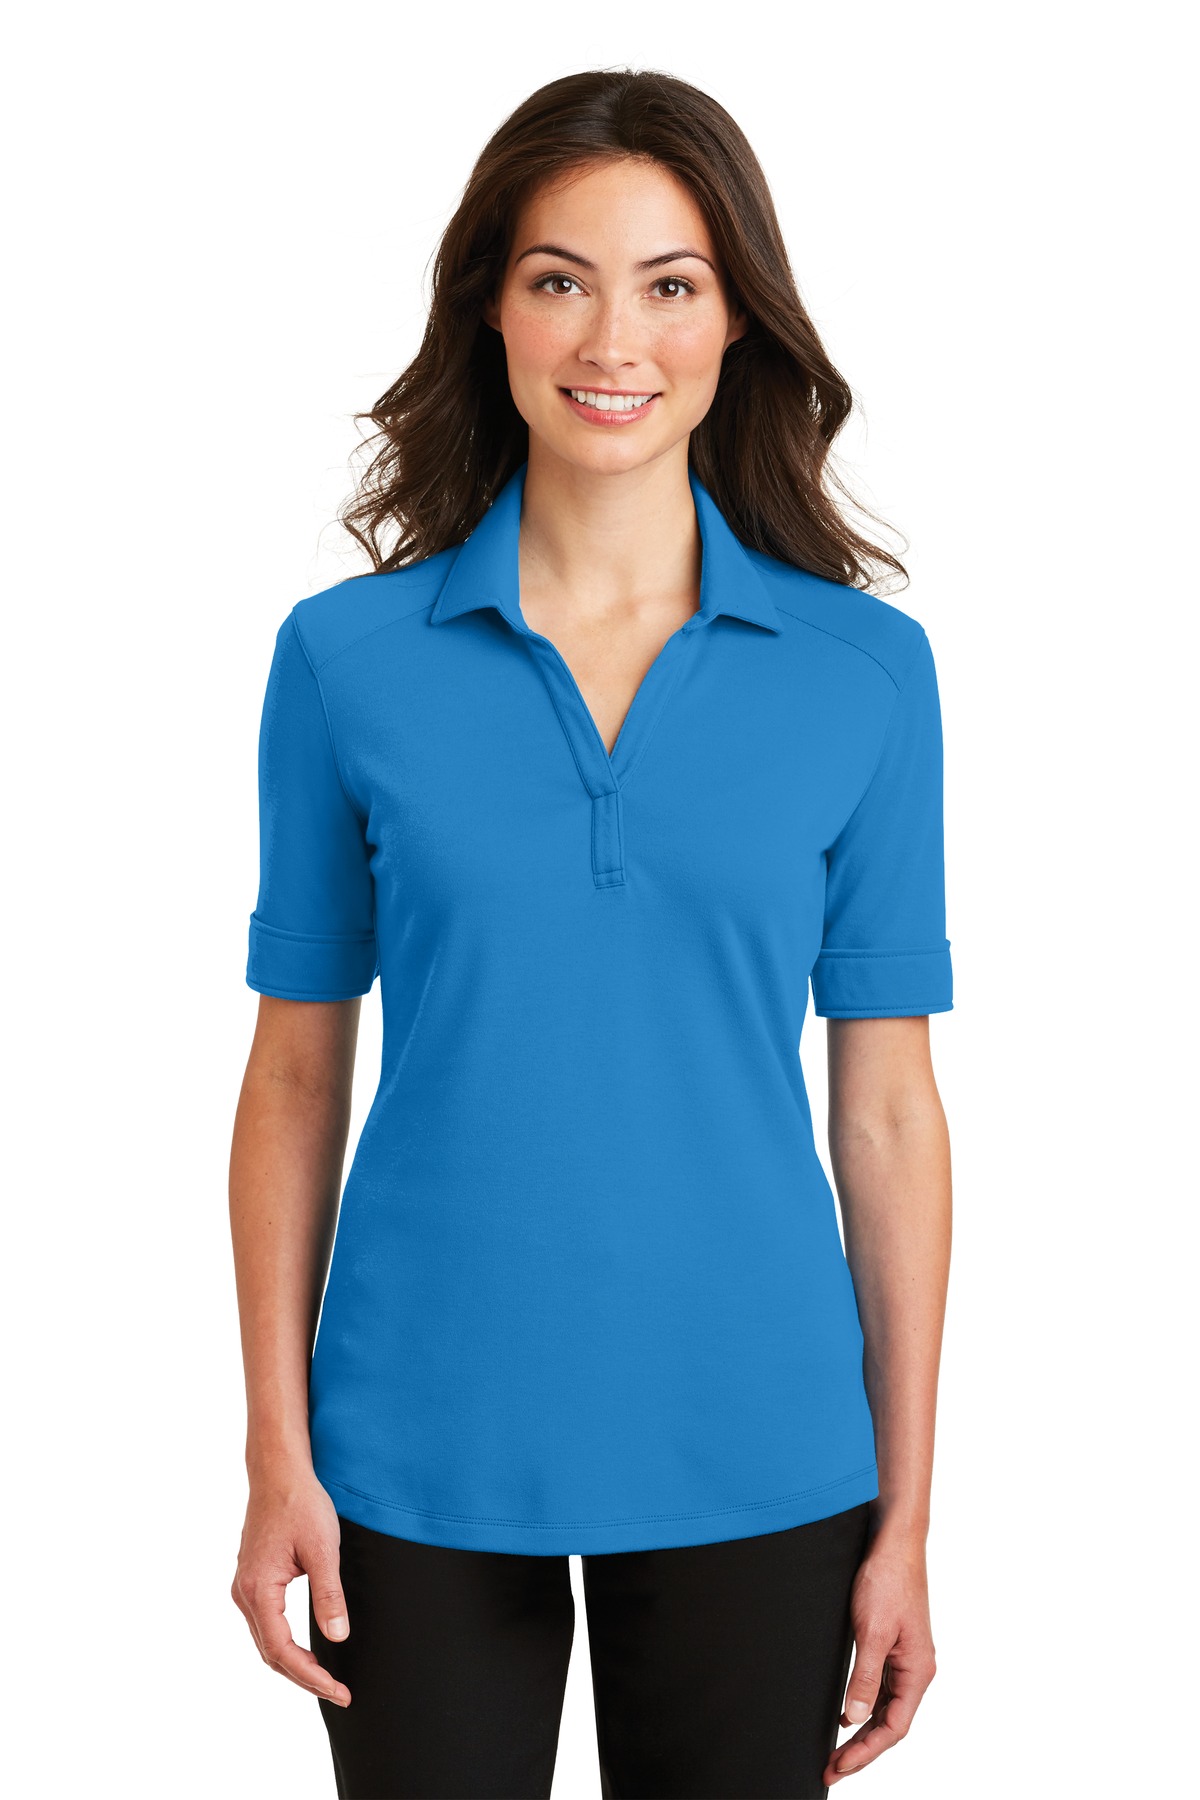 Port Authority Adult Female Women Plain Short Sleeves Polo Brilliant Blue Large - image 1 of 6